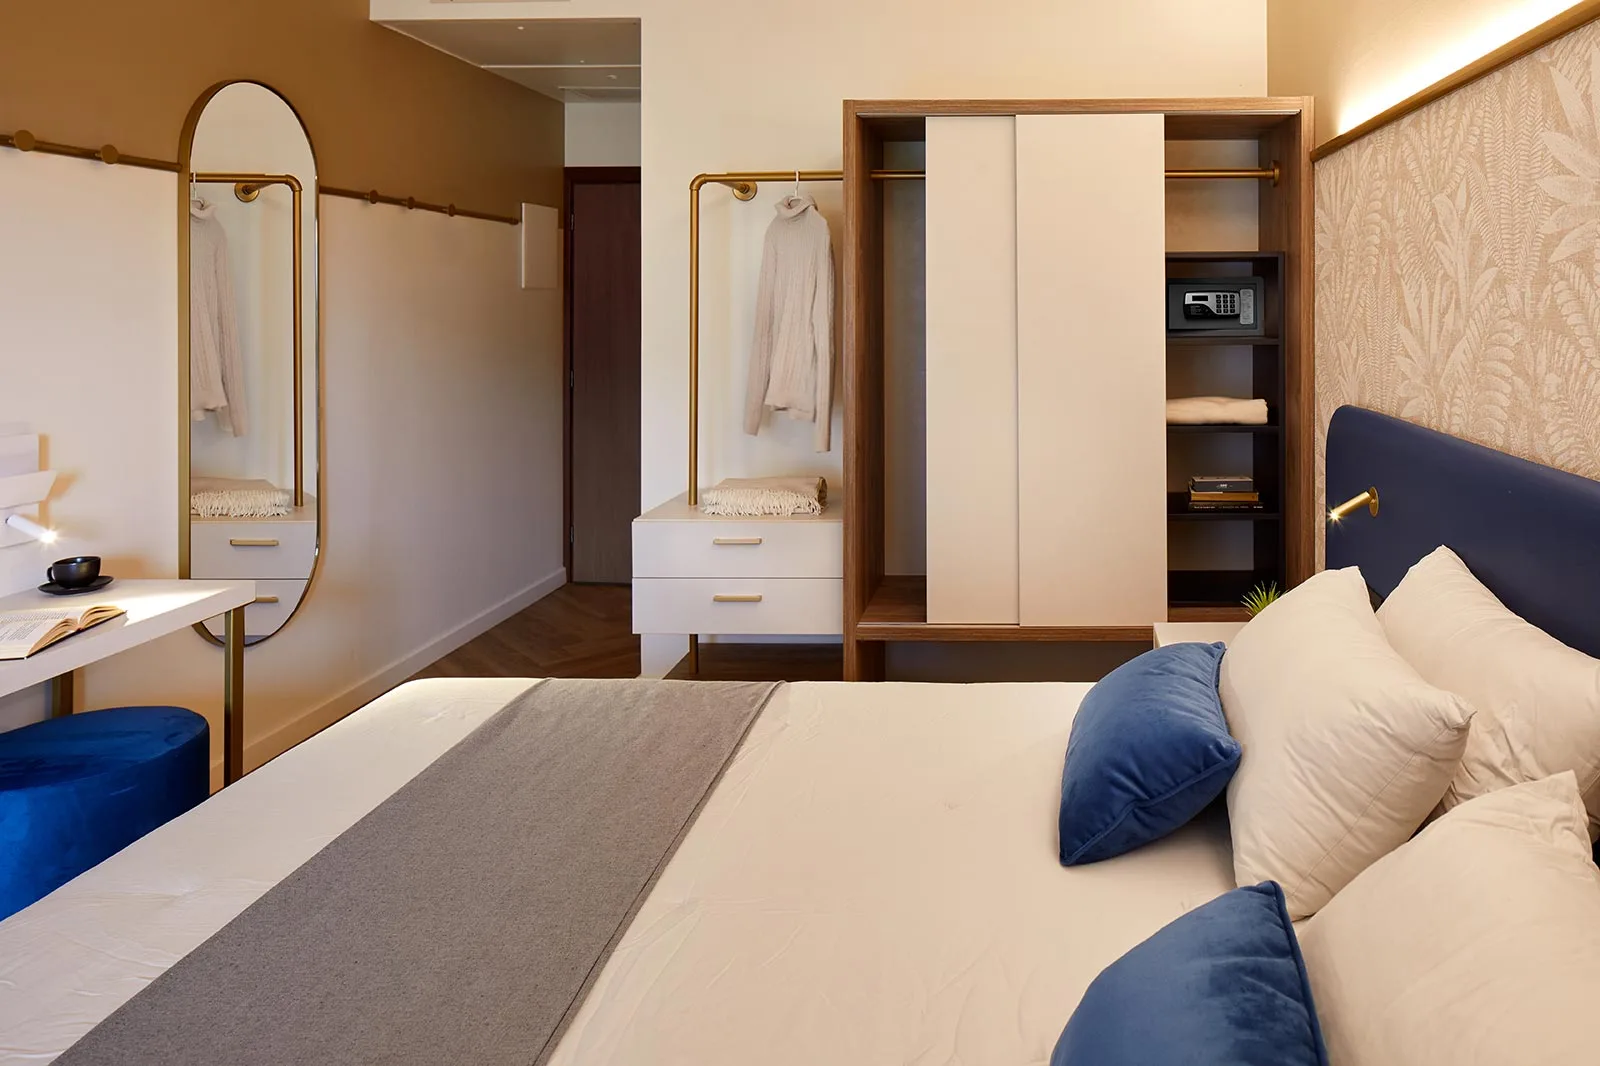 arredamento hotel design camera letto armadio